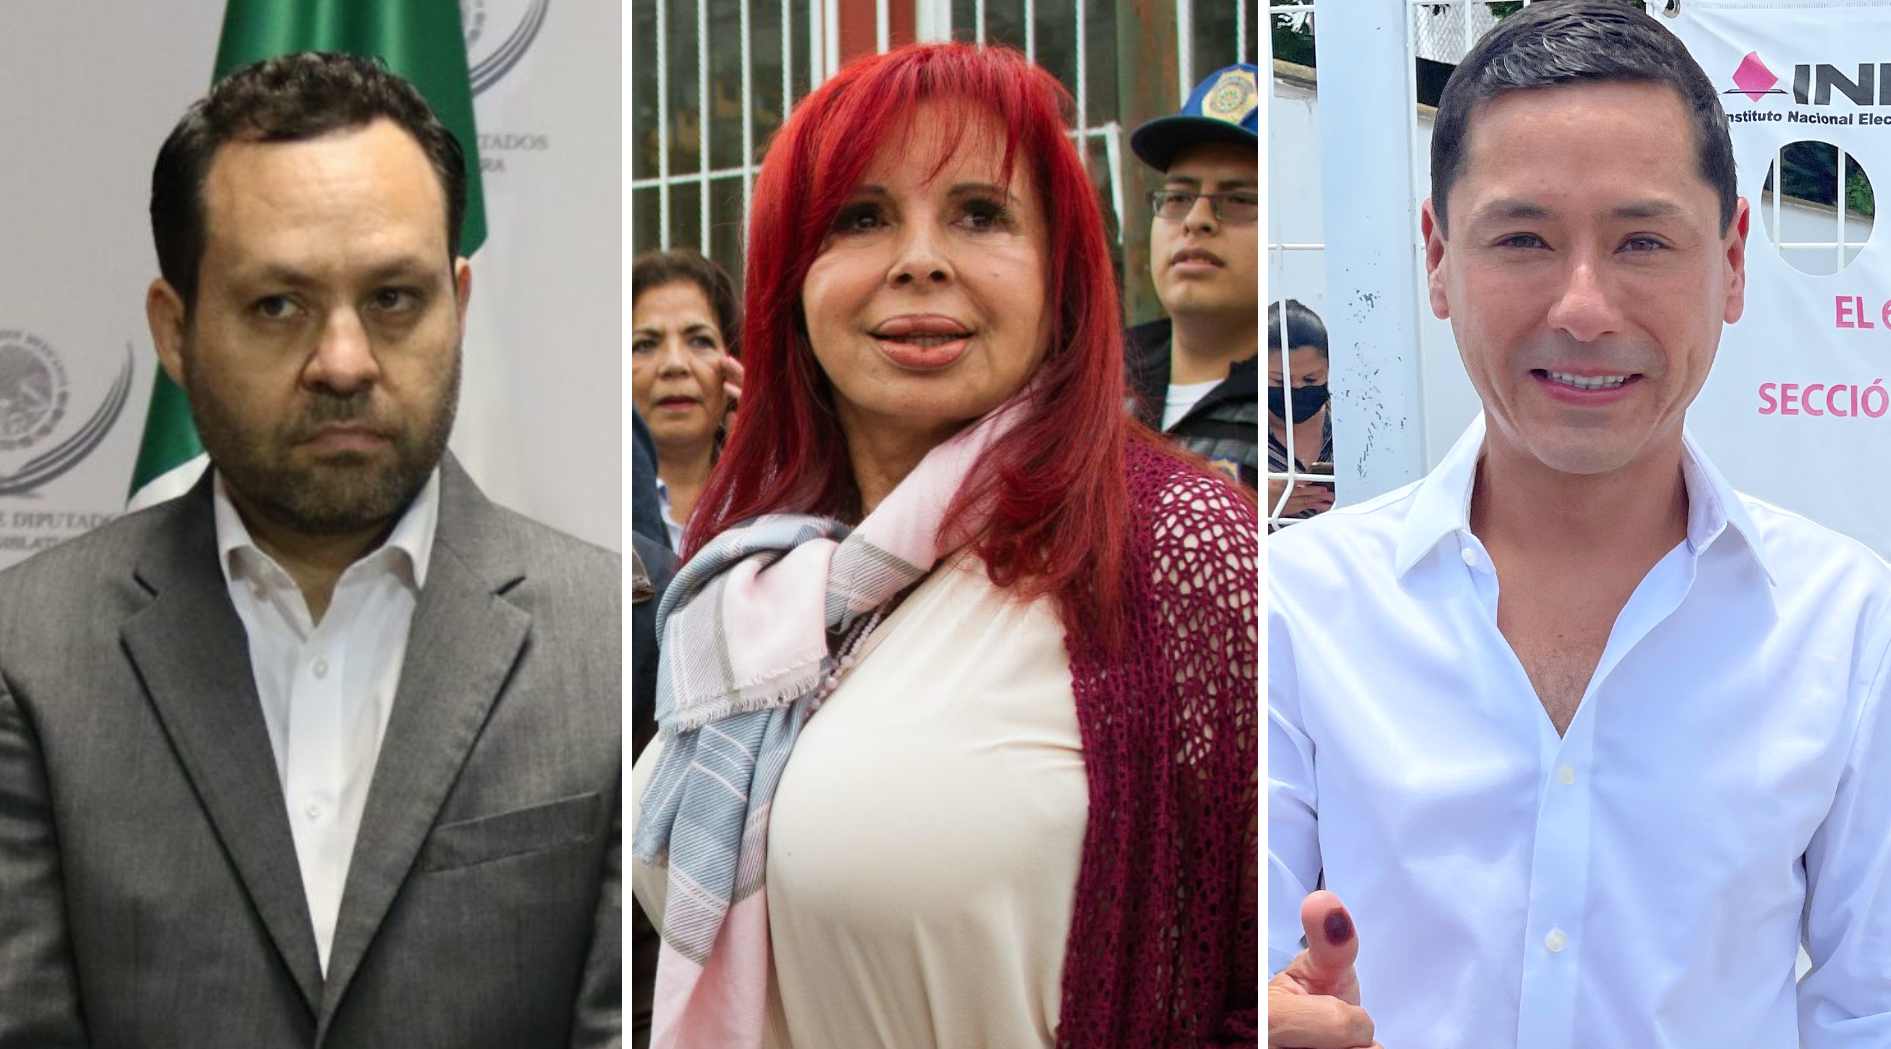 Cuidado, ahí va el ladrón!”: tensiones entre Morena y MC crecen por la  elección en Campeche - Infobae